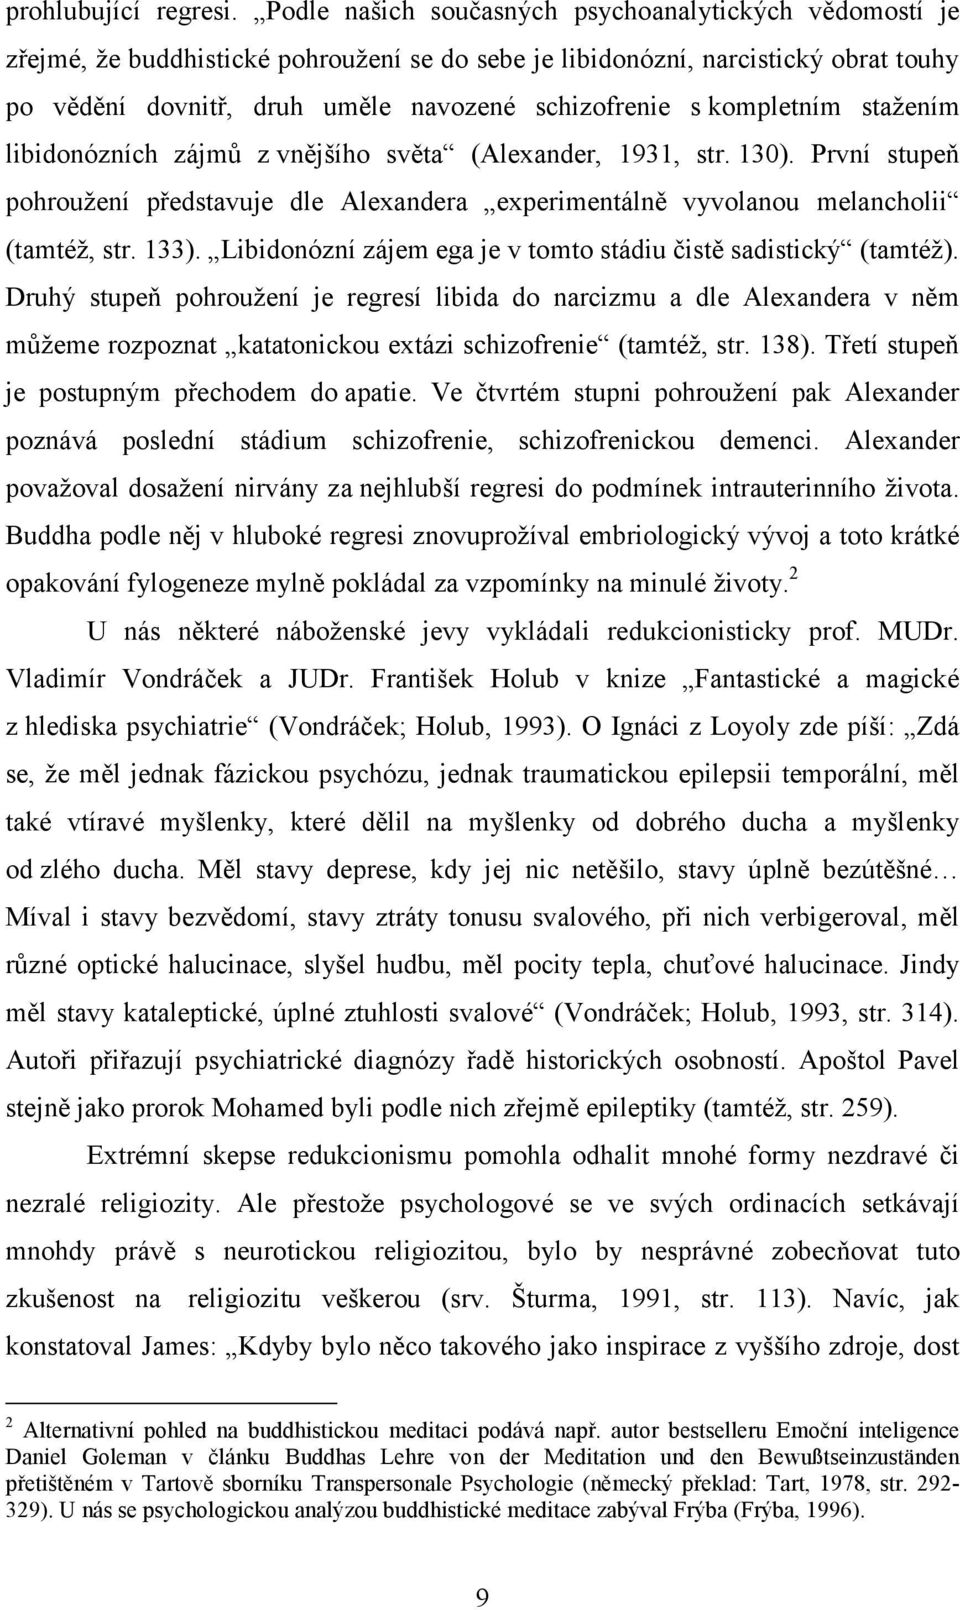 kompletním stažením libidonózních zájmů z vnějšího světa (Alexander, 1931, str. 130). První stupeň pohroužení představuje dle Alexandera experimentálně vyvolanou melancholii (tamtéž, str. 133).